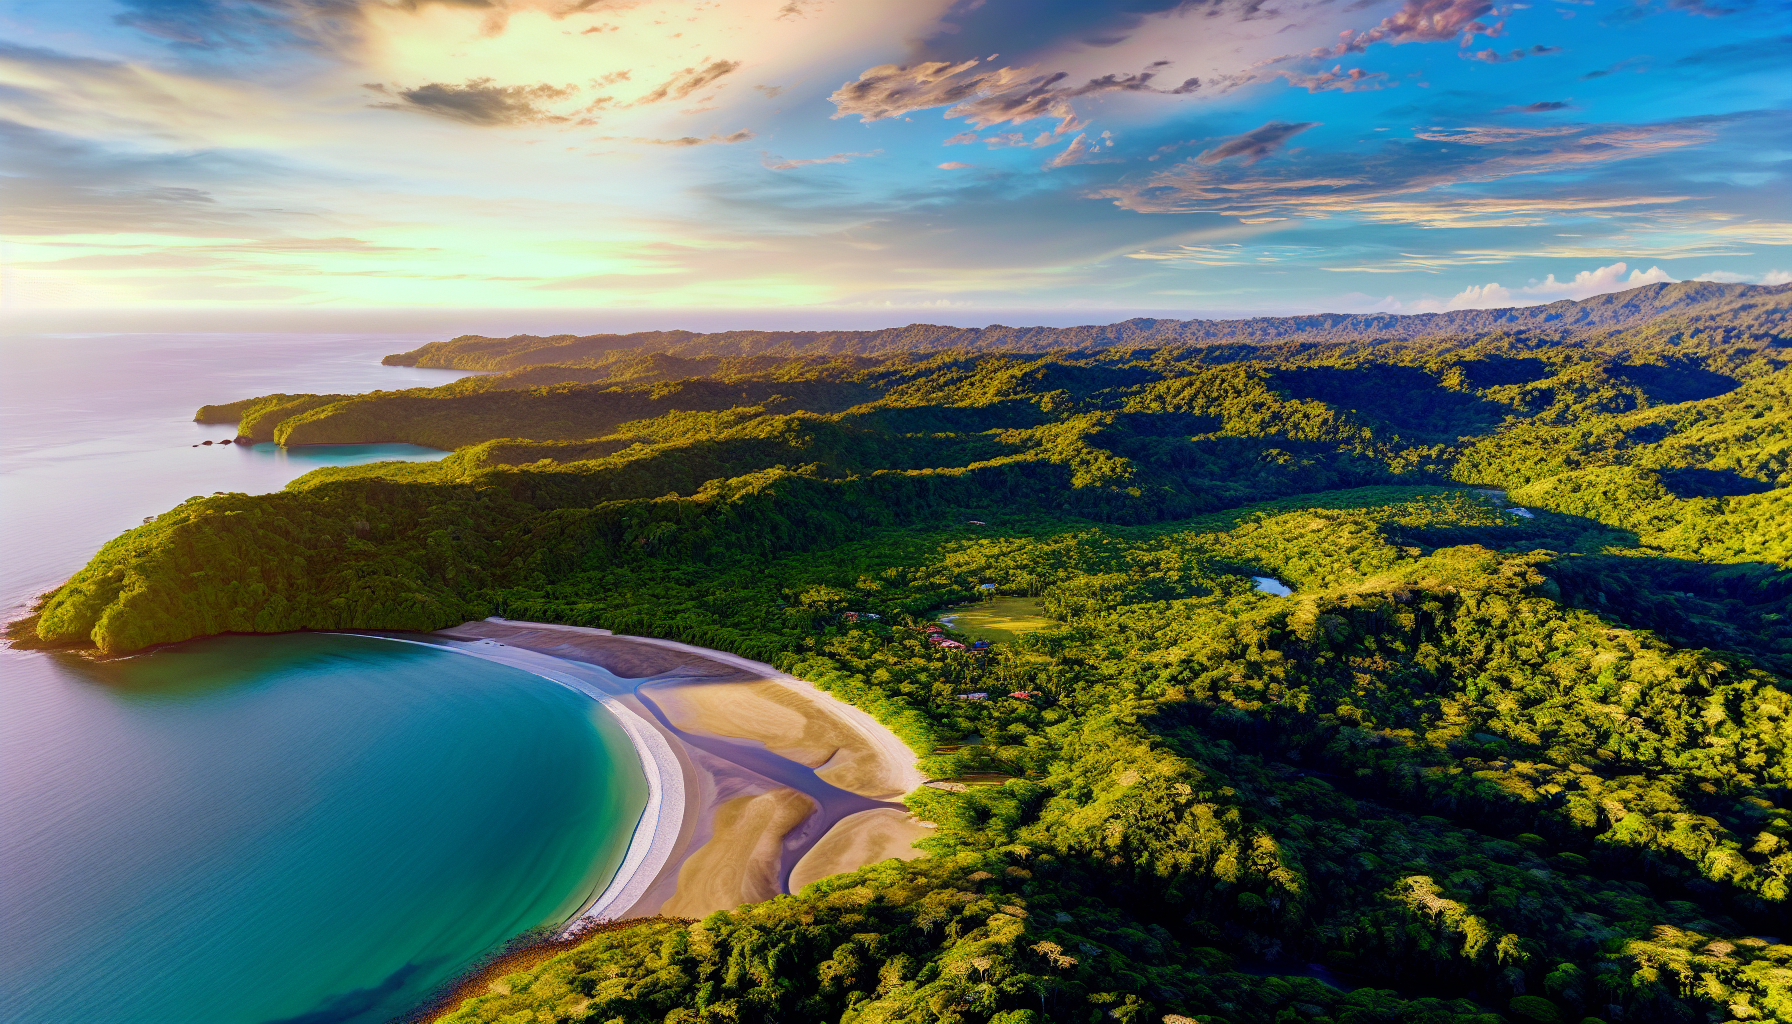 Breathtaking view of Peninsula Papagayo